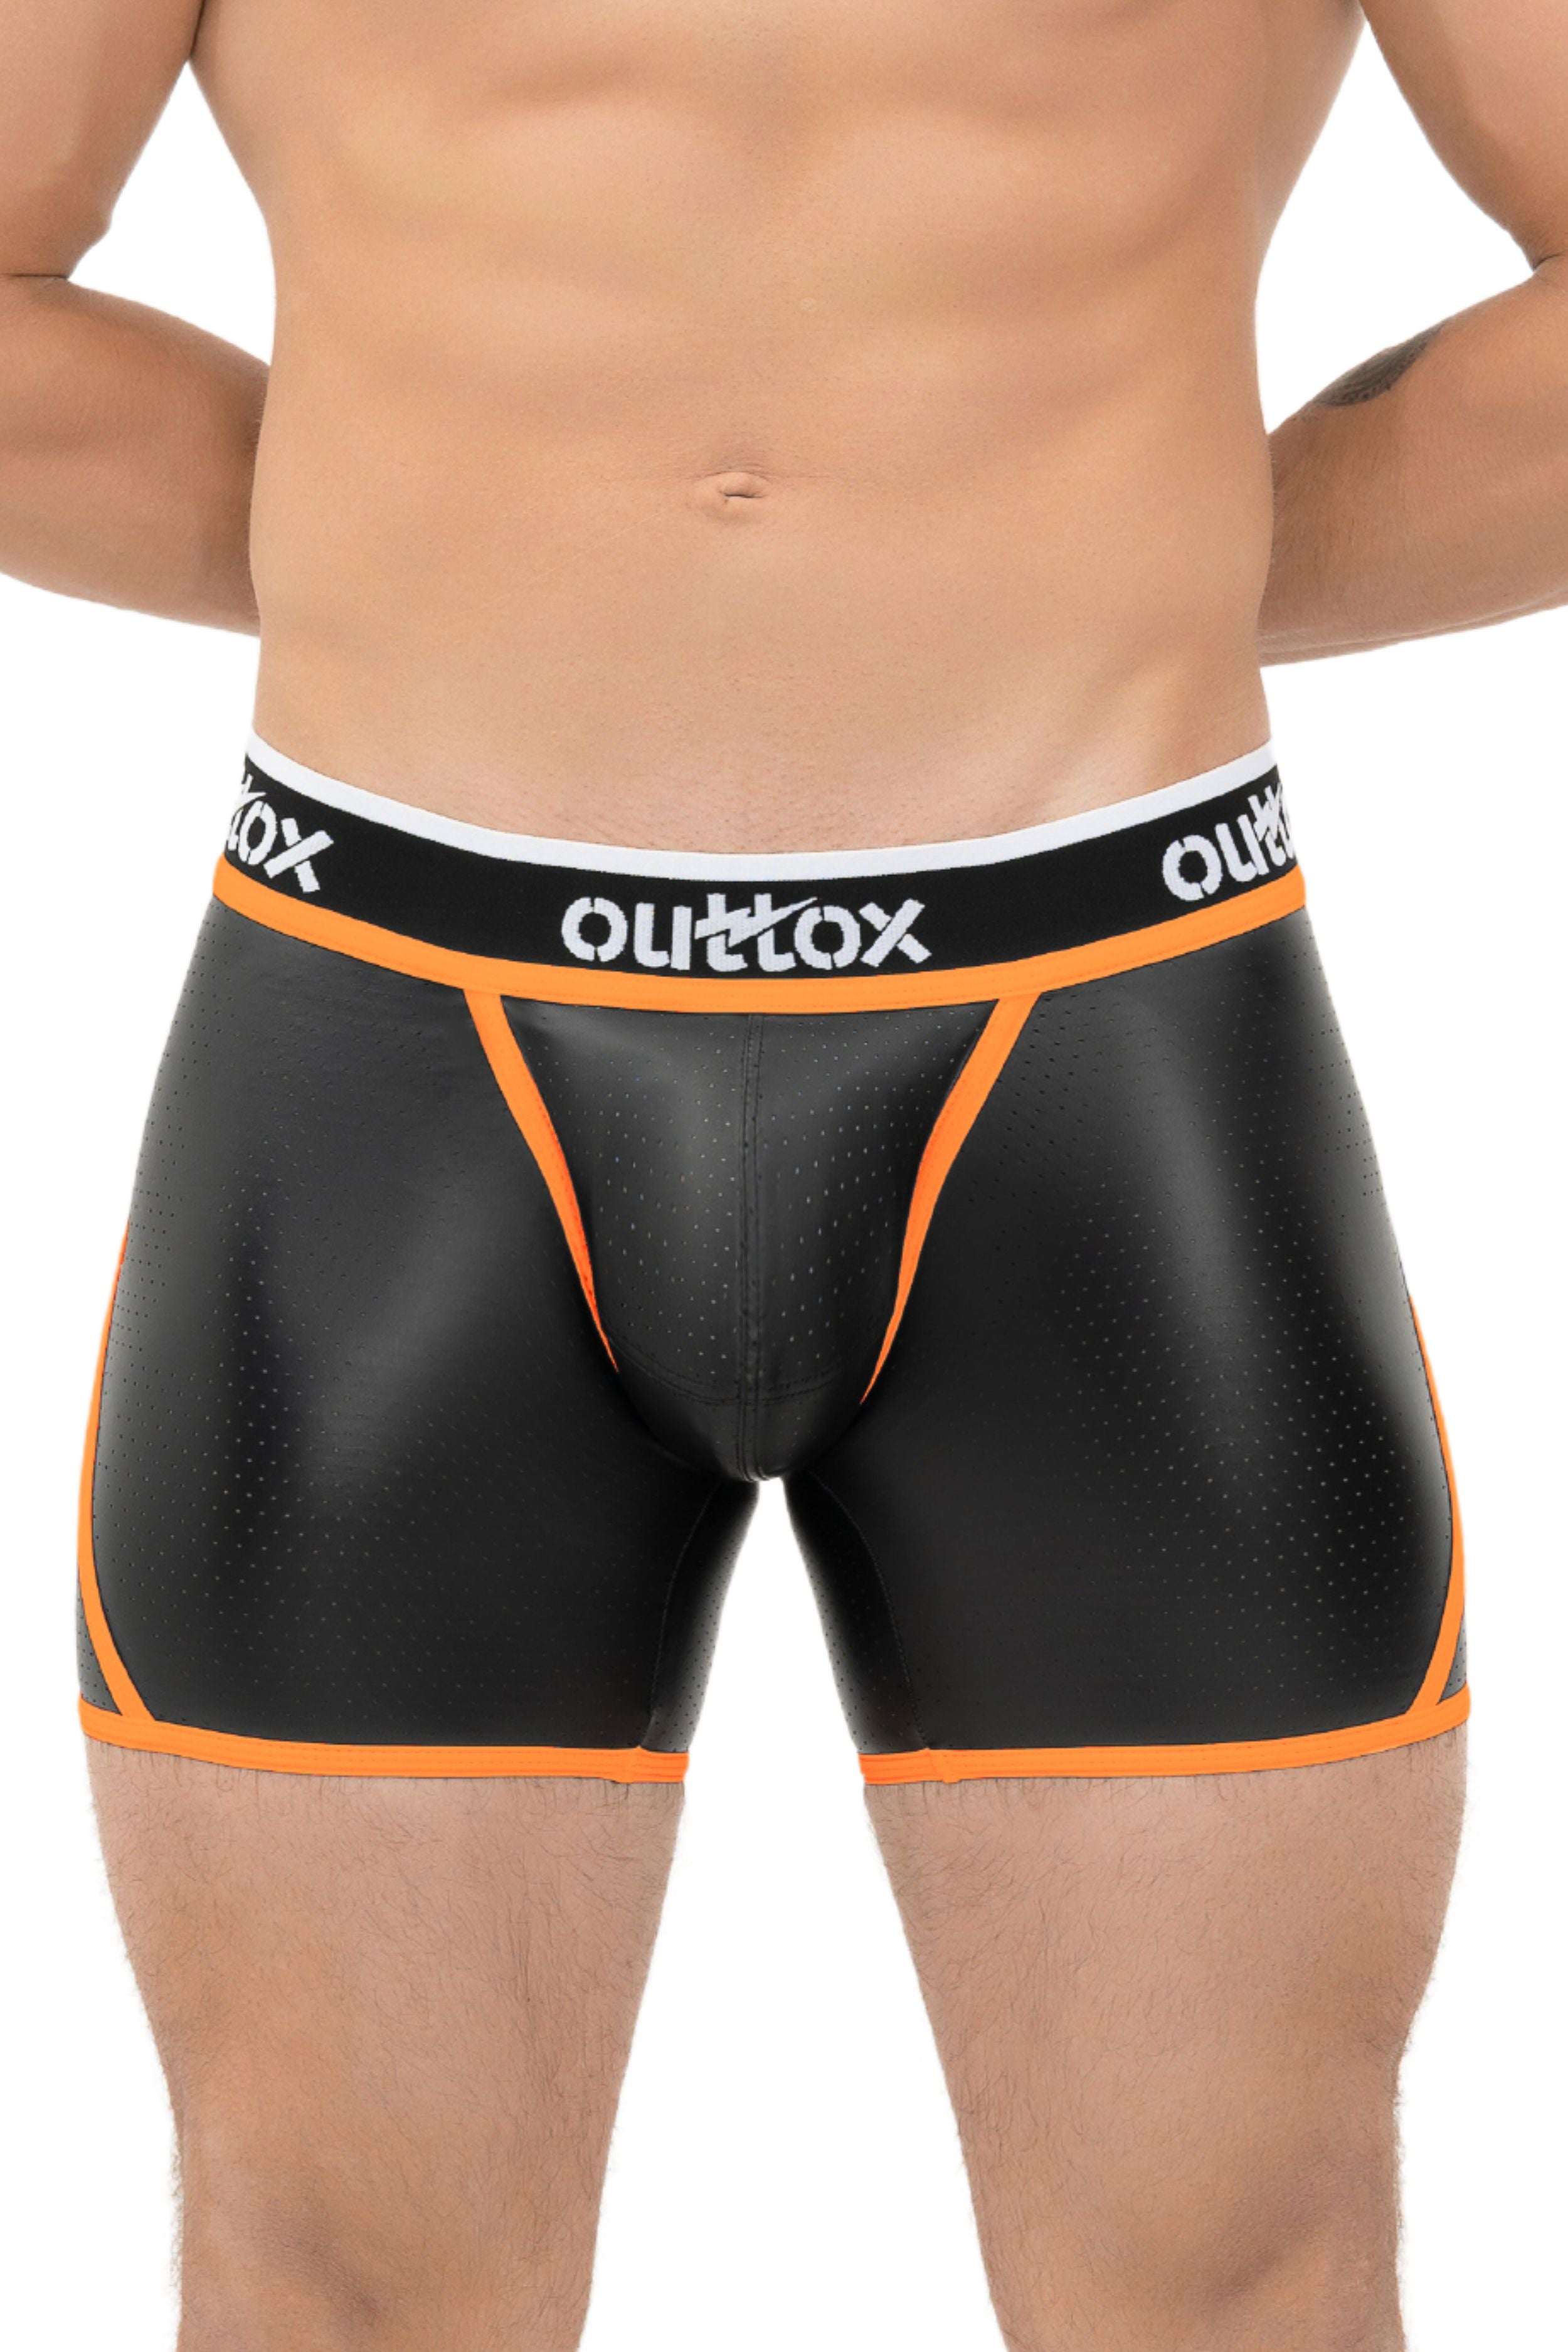 Outtox. Kurze Strumpfhose mit Wickel-Rücken. Codpiece mit Druckknopf. Schwarz+Orange